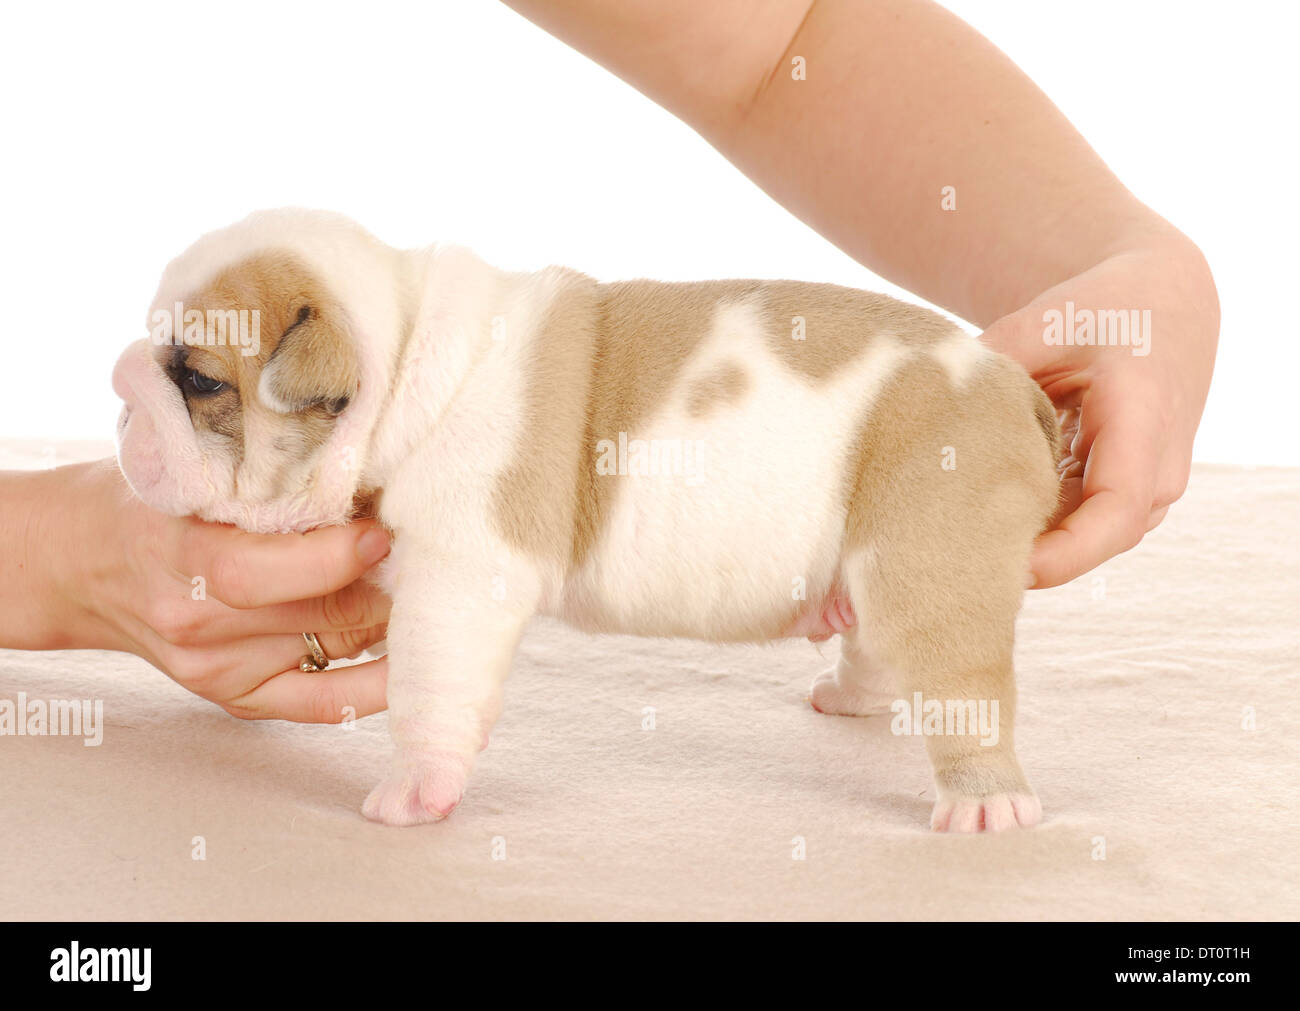 newborn english bulldog